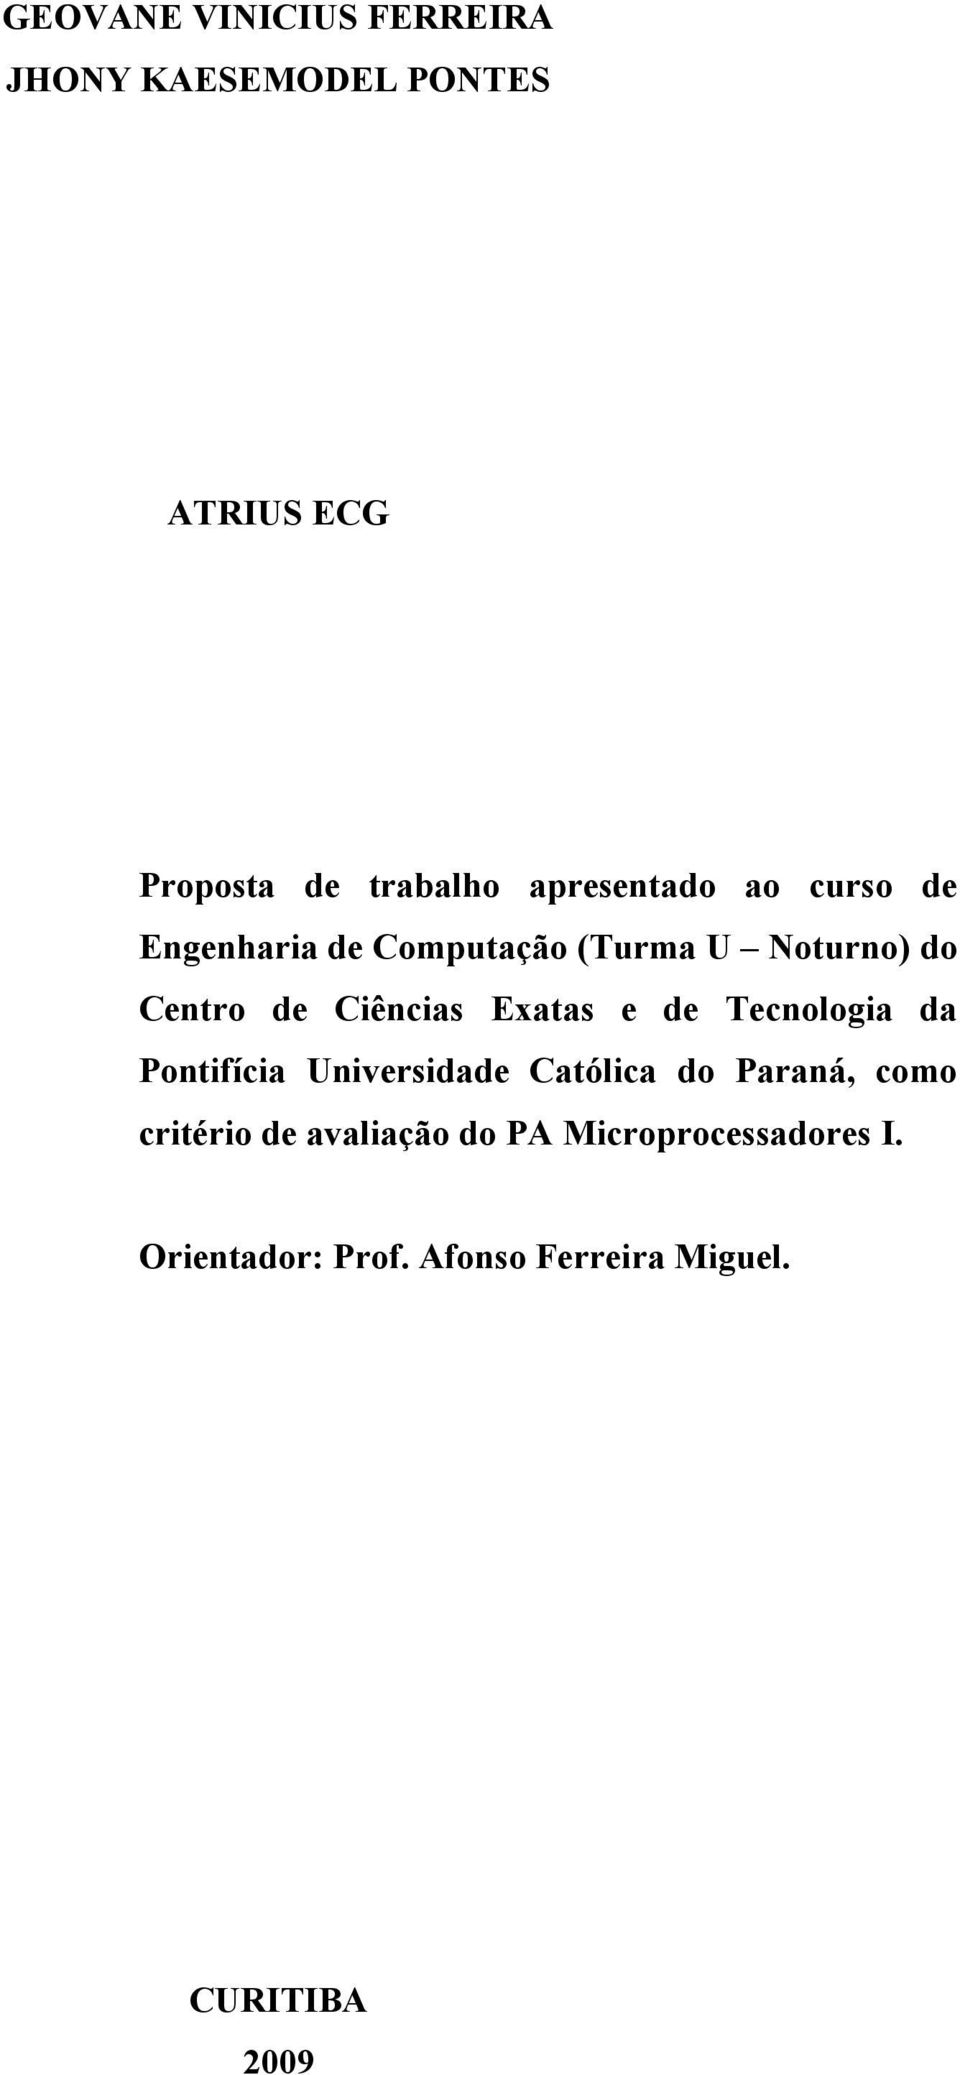 Exatas e de Tecnologia da Pontifícia Universidade Católica do Paraná, como critério de